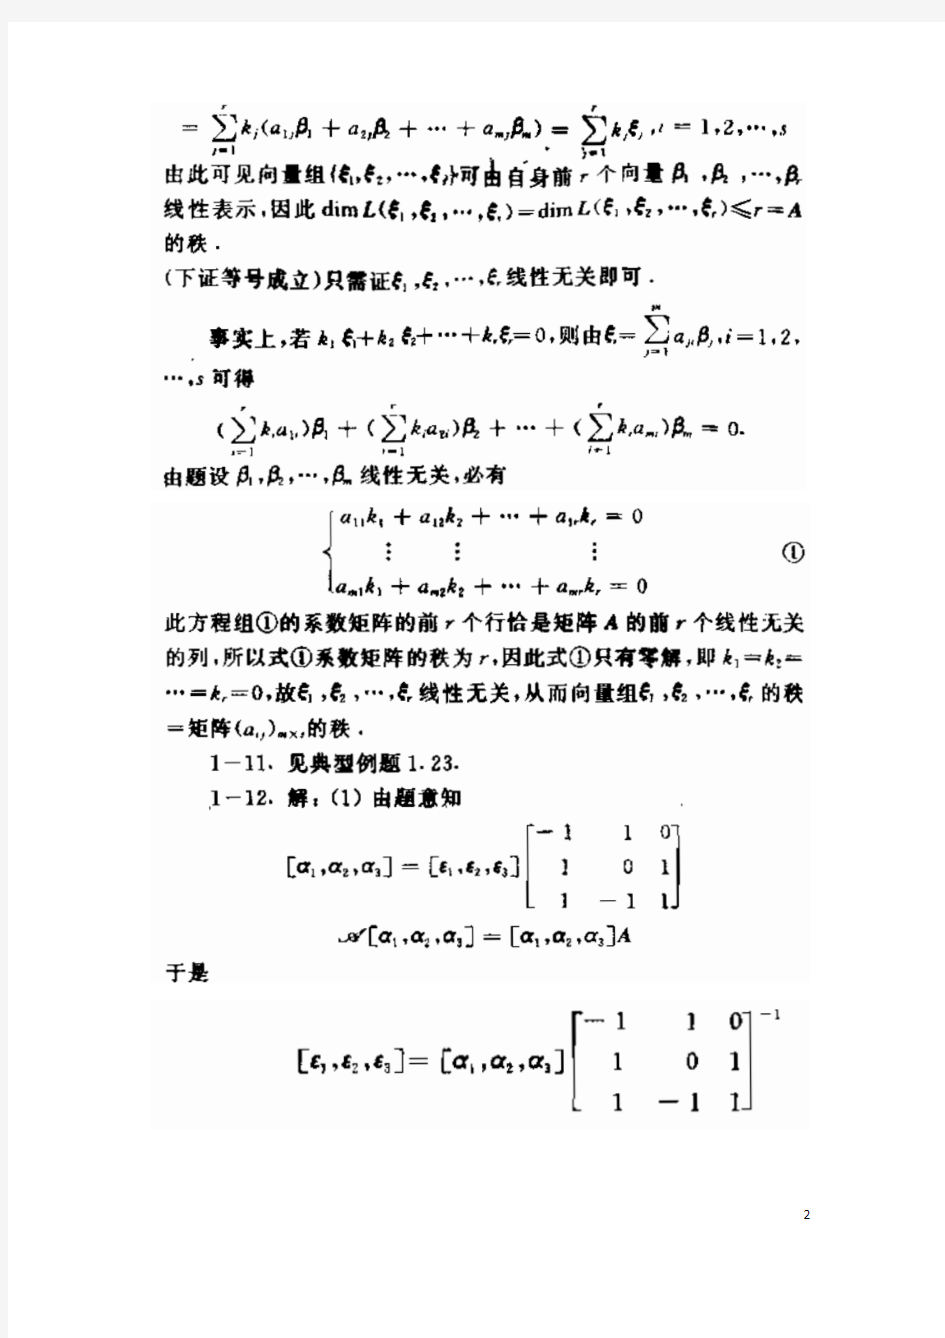 矩阵分析课后习题答案(北京理工大学出版社) (1)